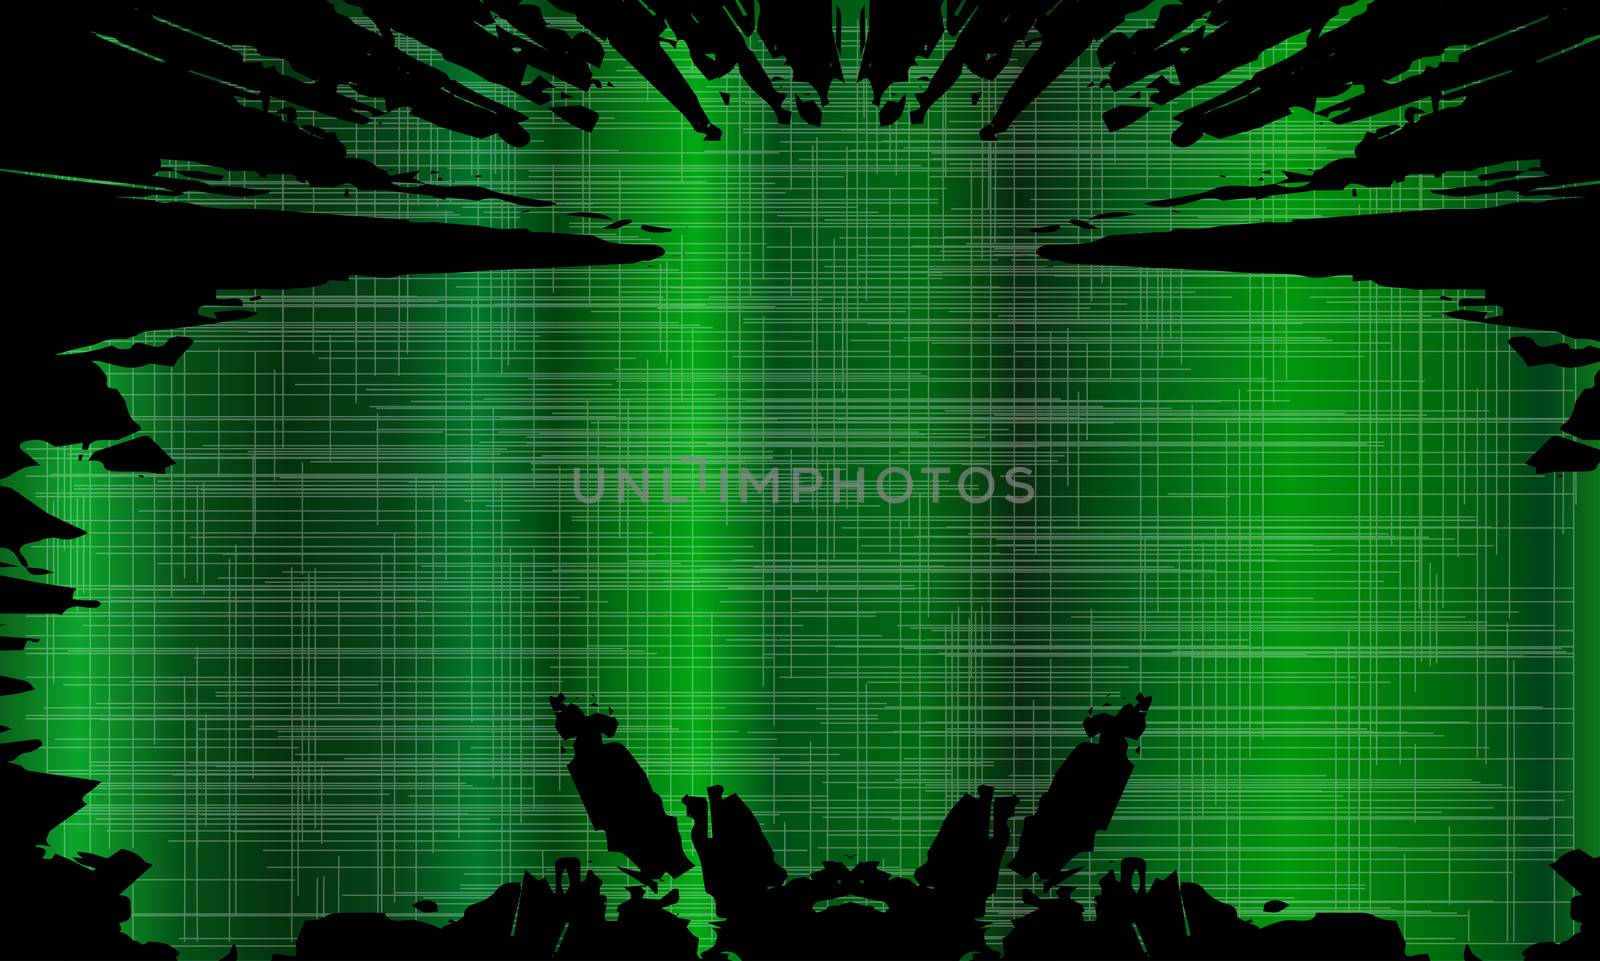 A green grunge style splash background